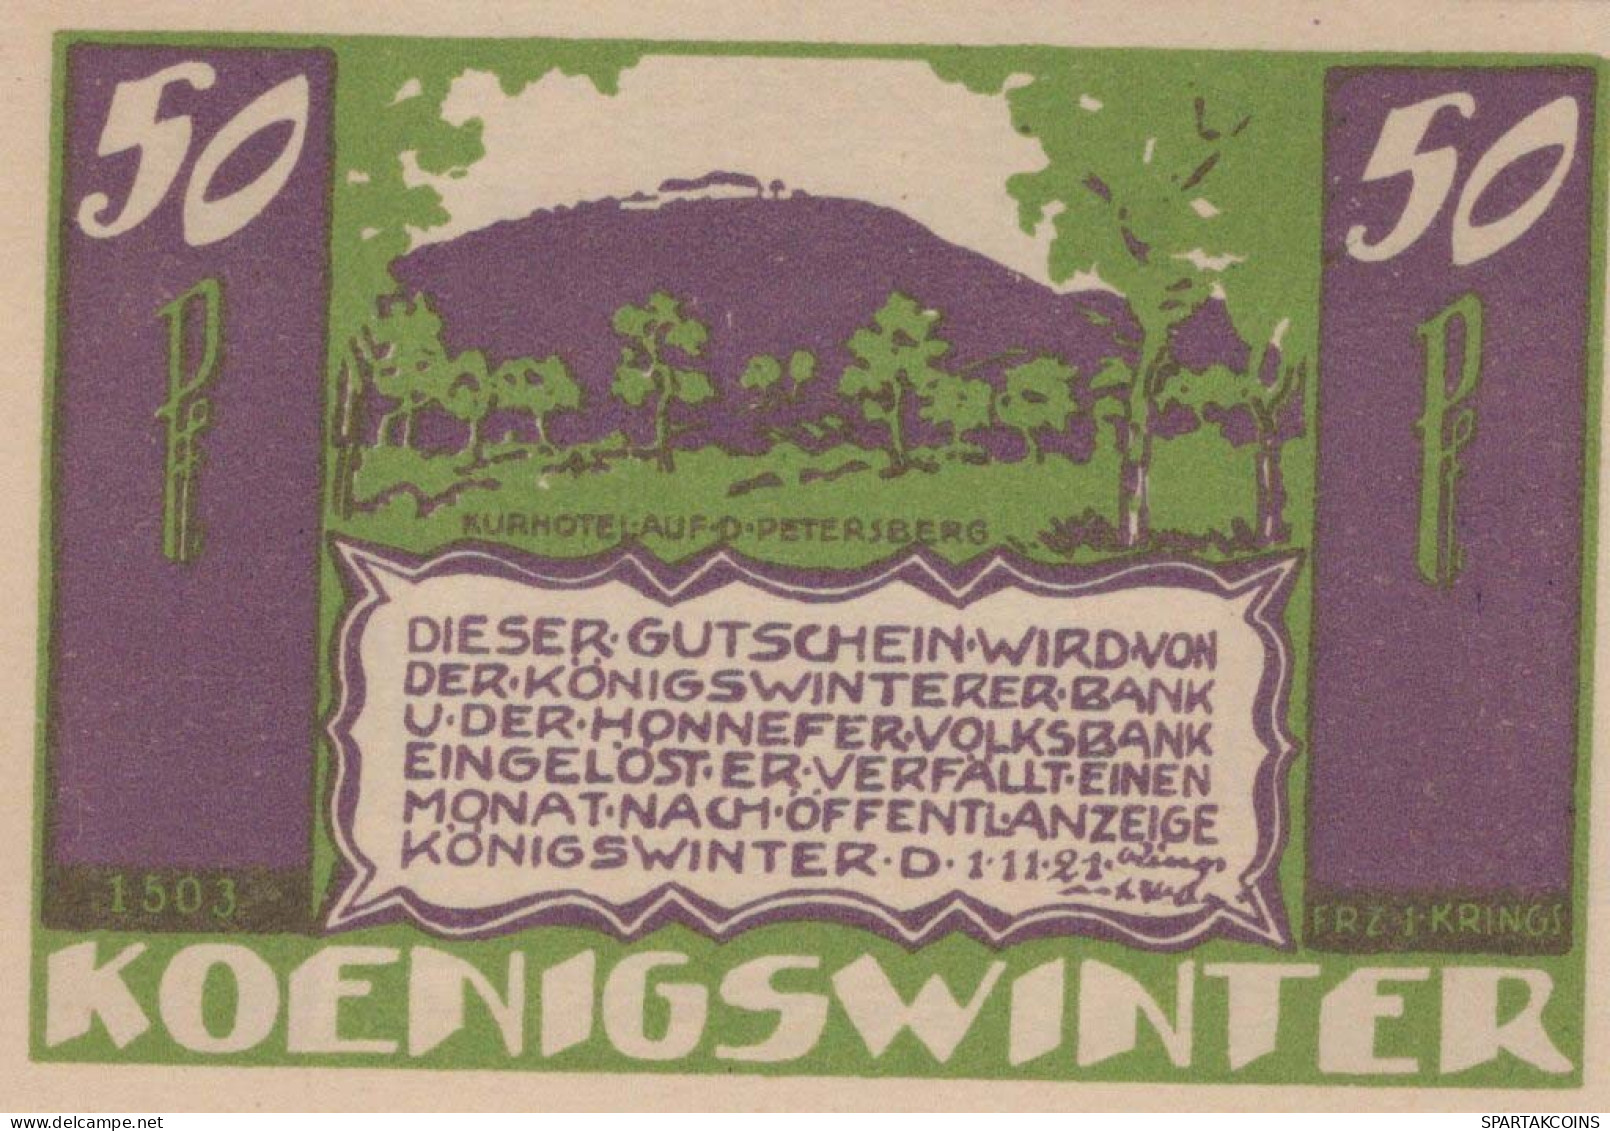 50 PFENNIG 1921 Stadt KoNIGSWINTER Rhine DEUTSCHLAND Notgeld Banknote #PF862 - [11] Local Banknote Issues